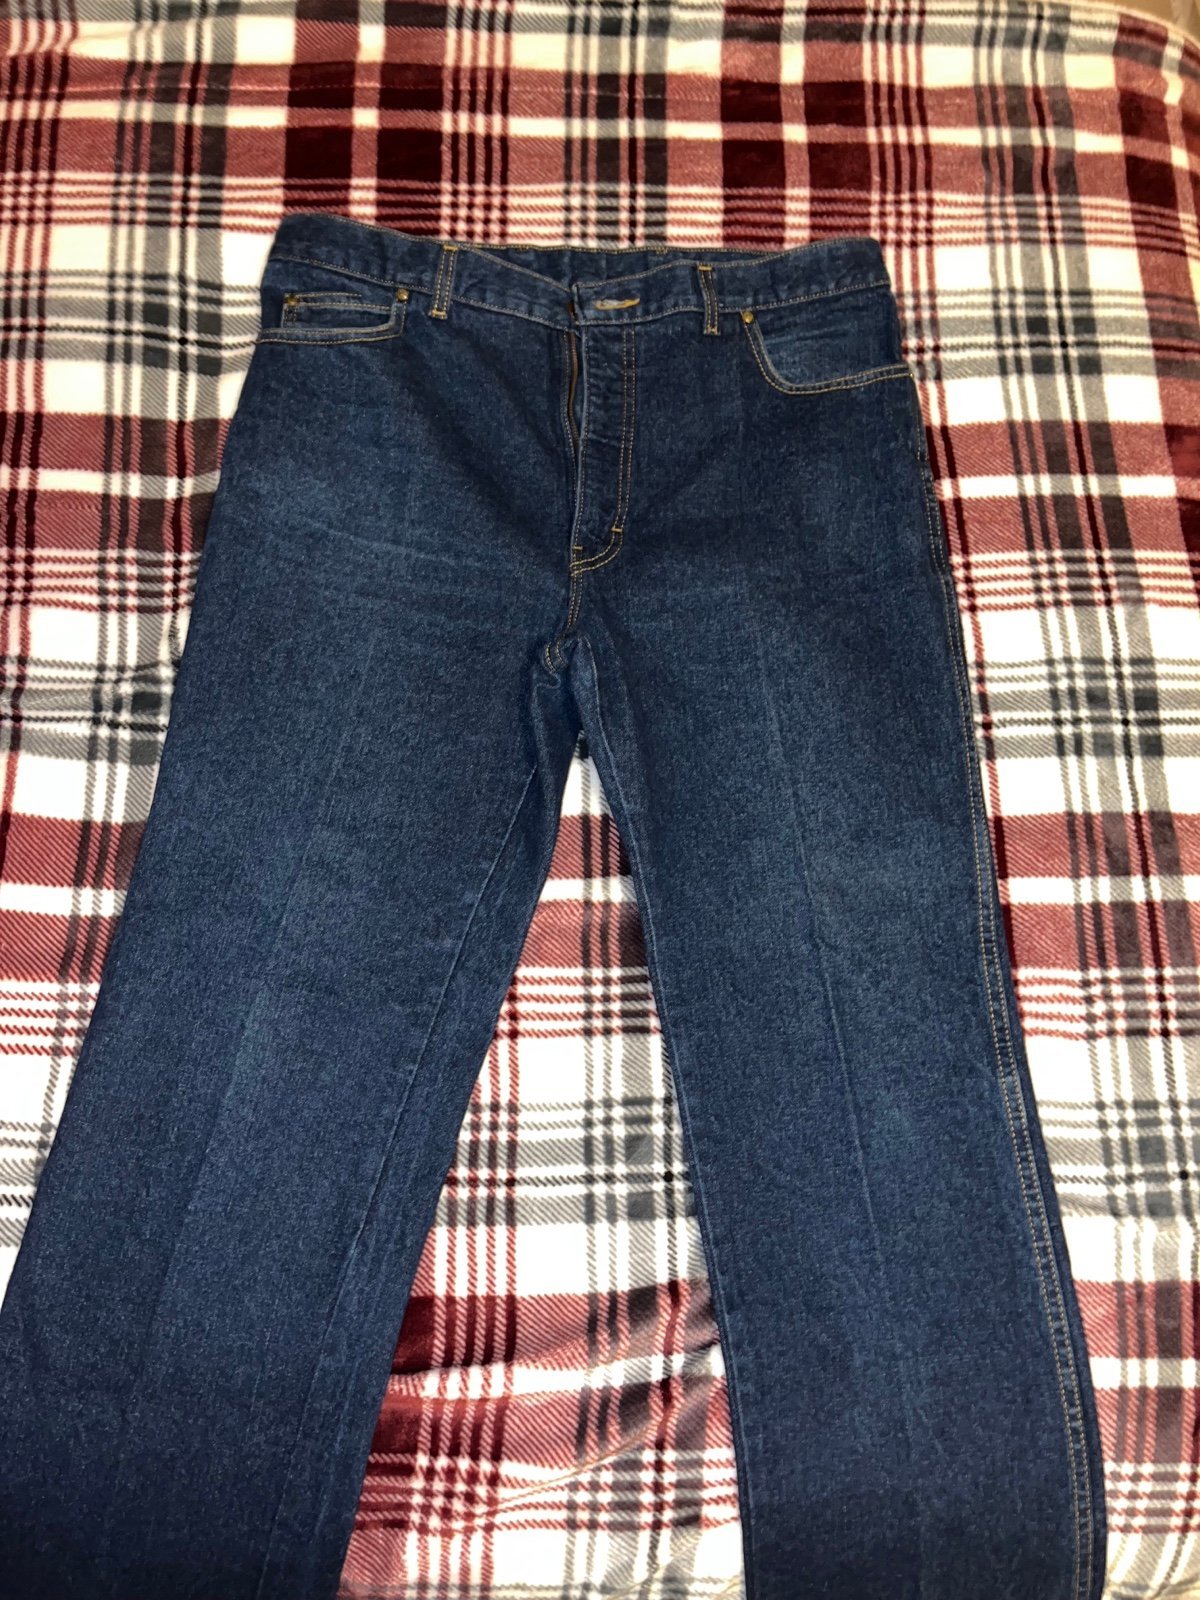 Vintage 80s jeans dhkoCA6dJ